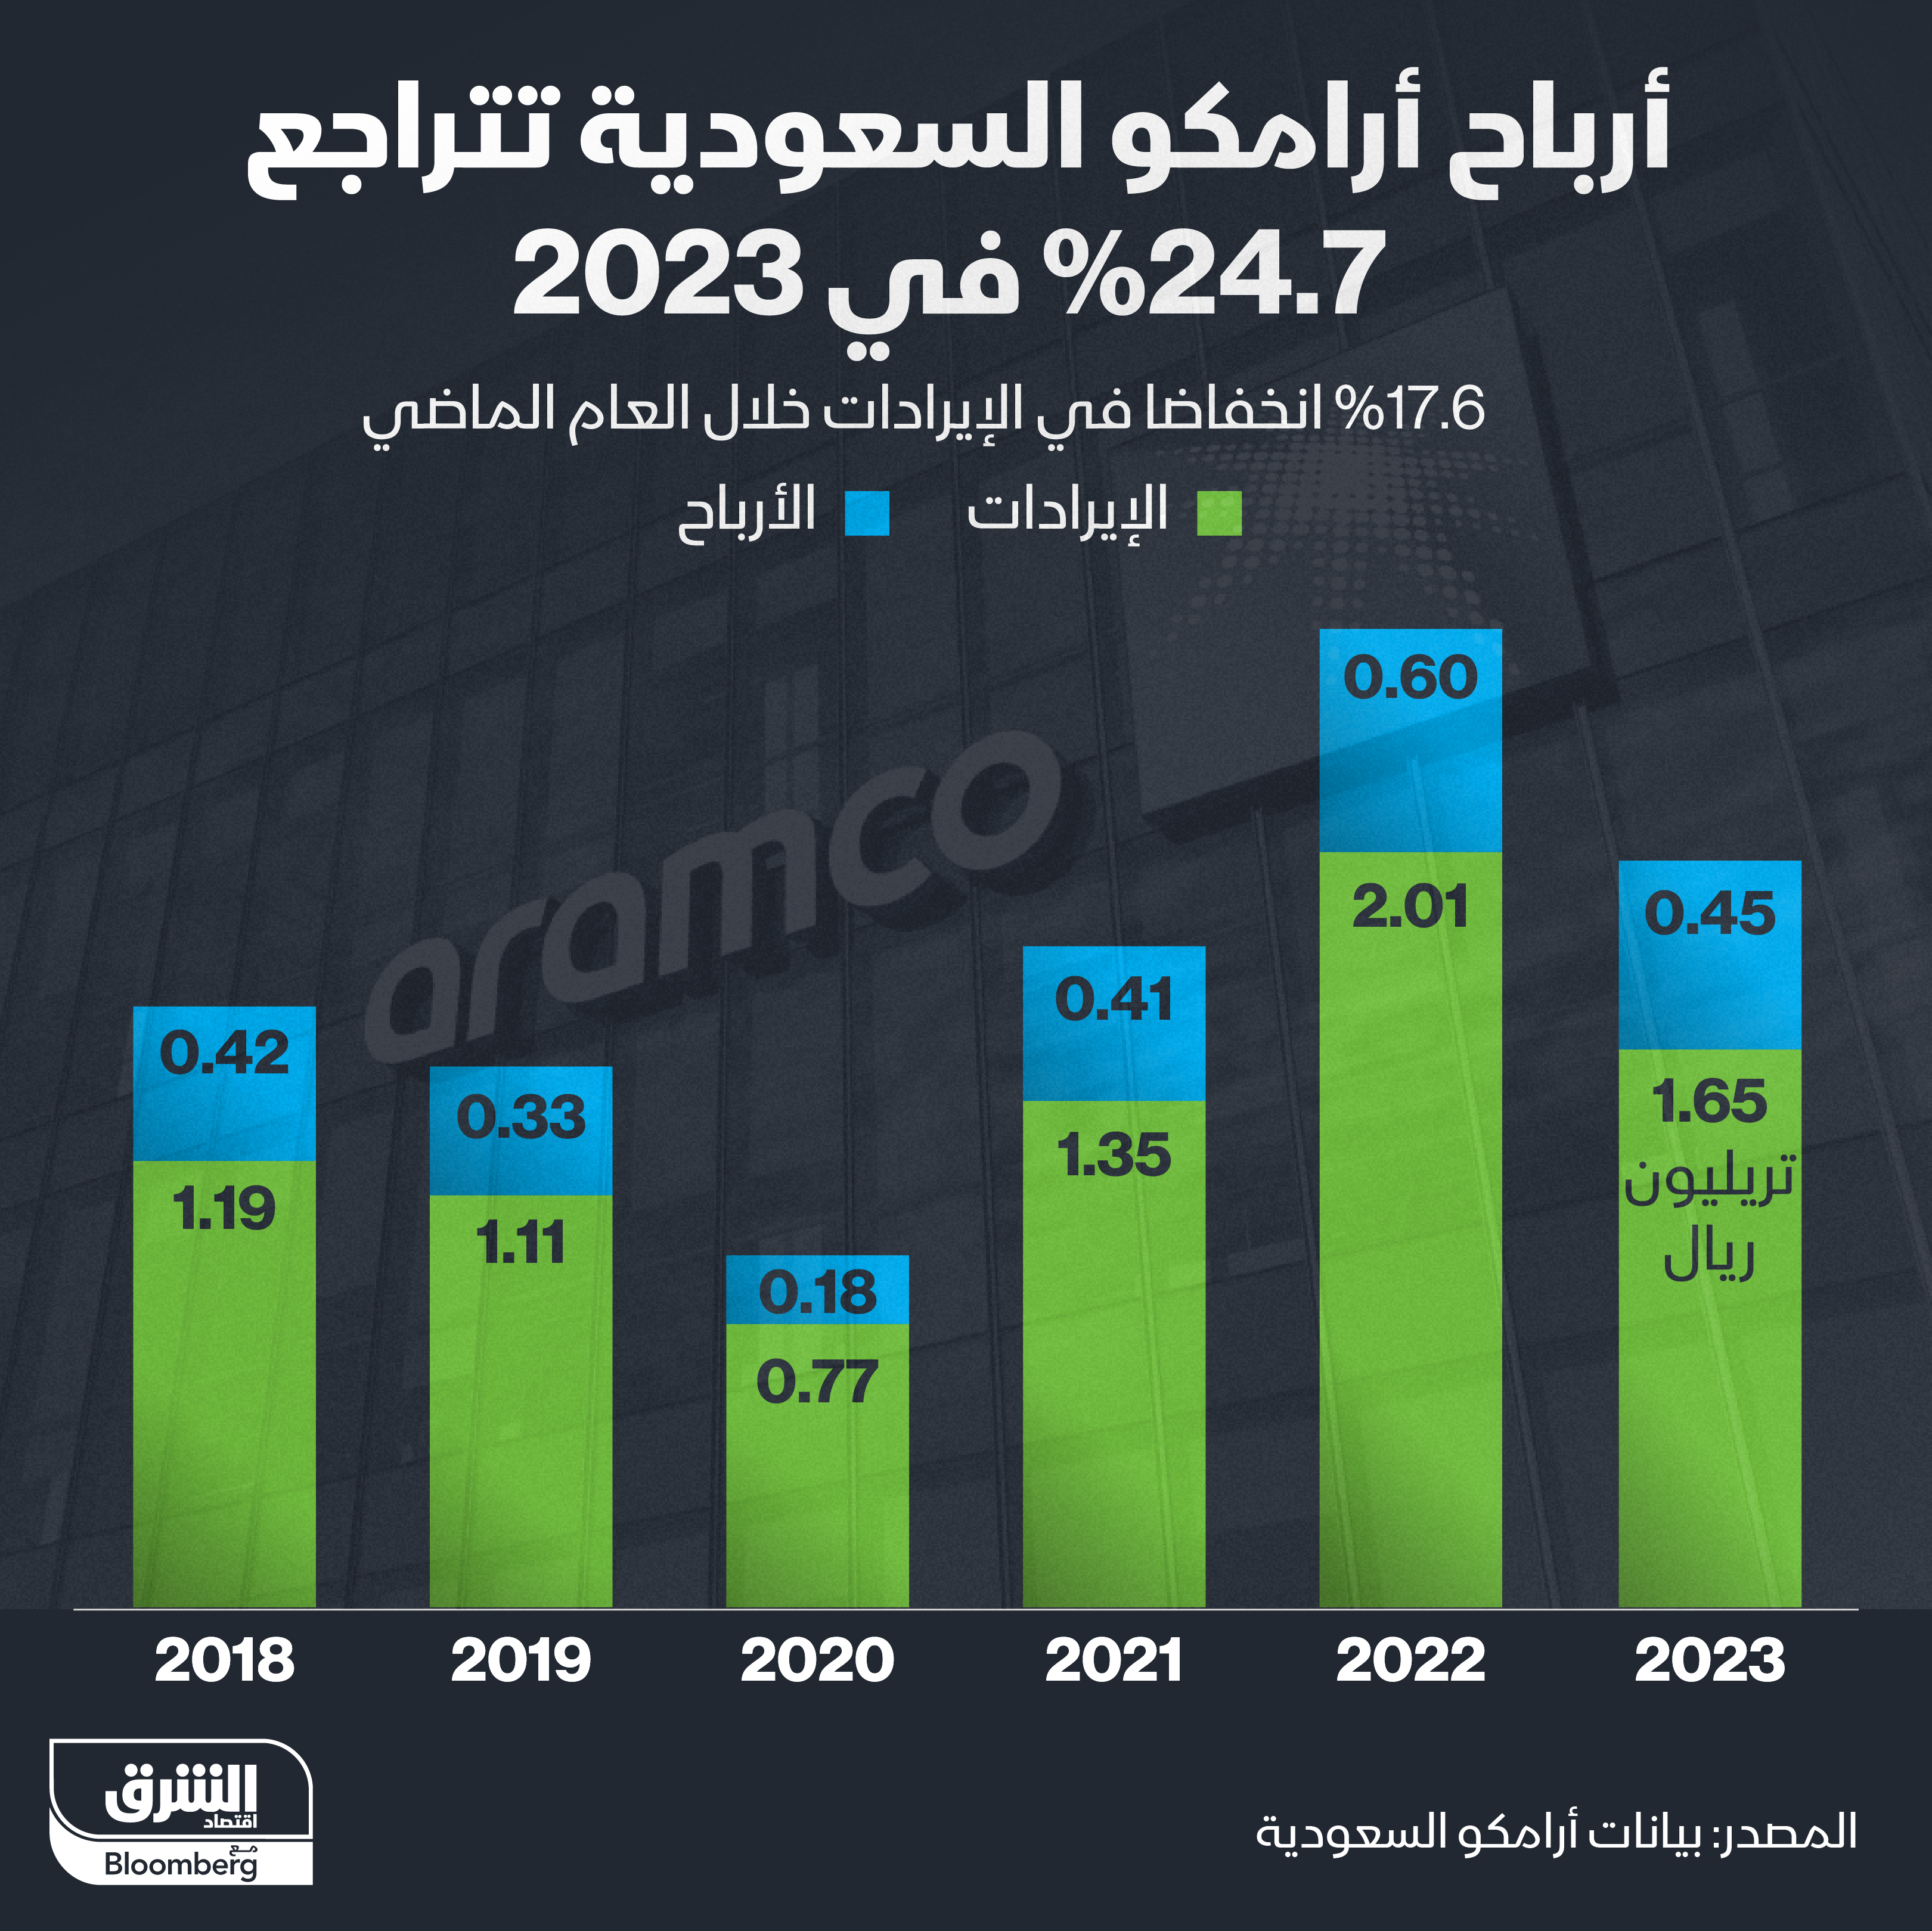 إيرادات وأرباح أرامكو السنوية منذ 2018